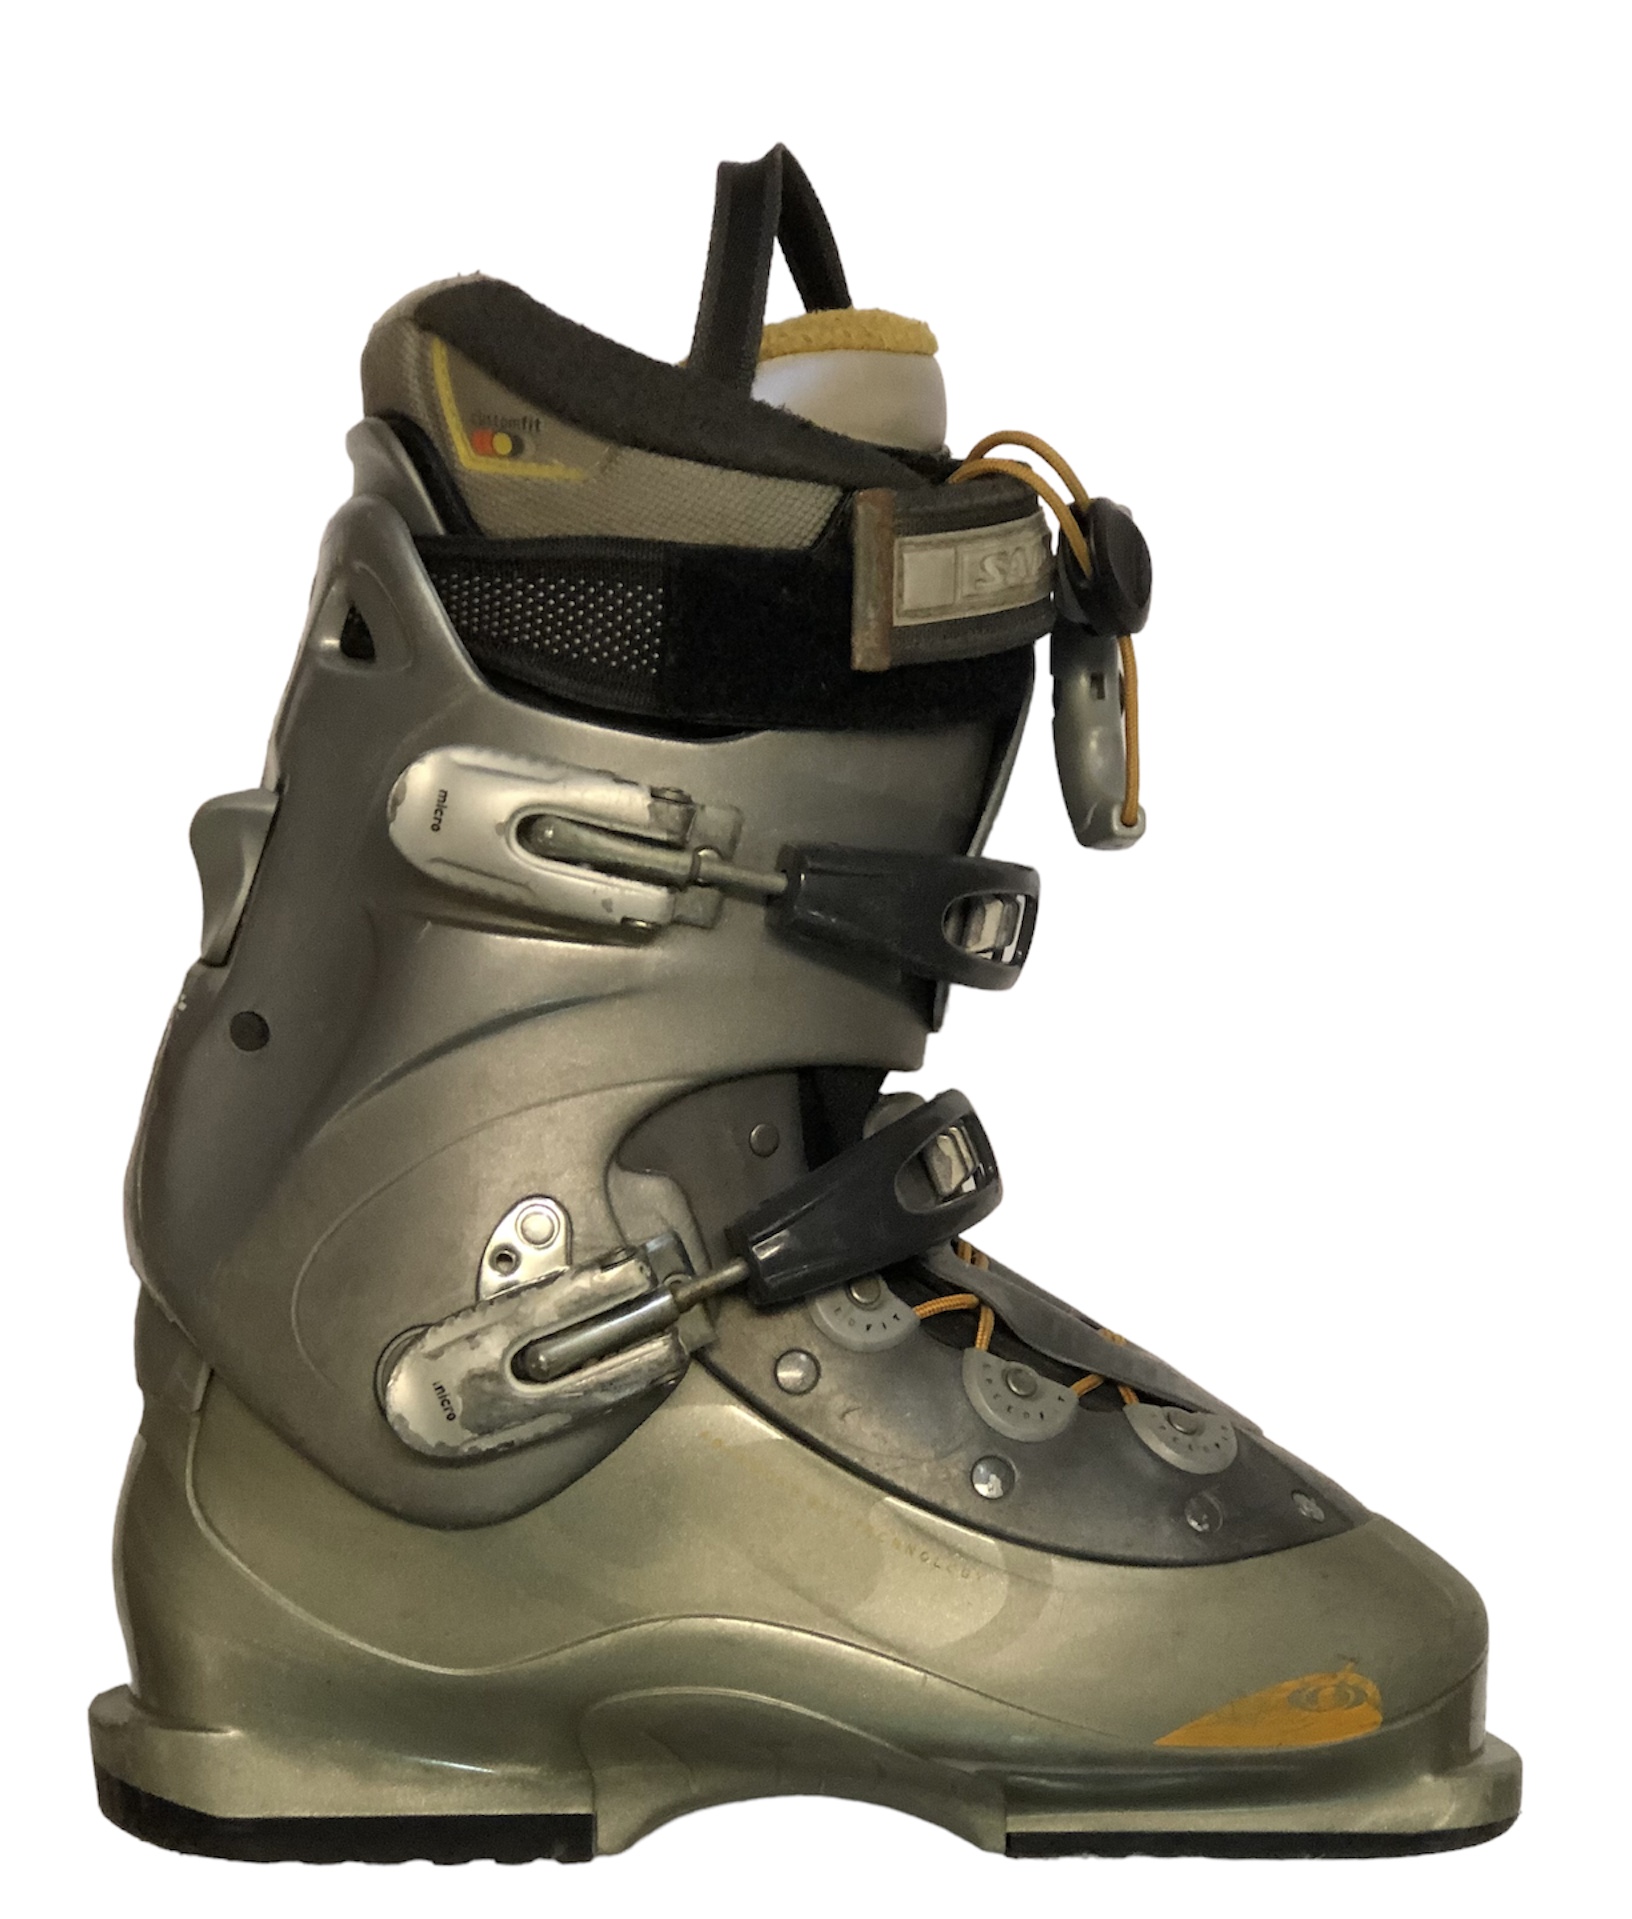 Używane buty narciarskie SALOMON 26,5/307mm rozmiar 41 :: Sklep Sportowy -  outlet sportowy, koncówki kolekcji, wyprzedaże, narty, deski, wiązania,  sprzet narciarski, buty sportowe